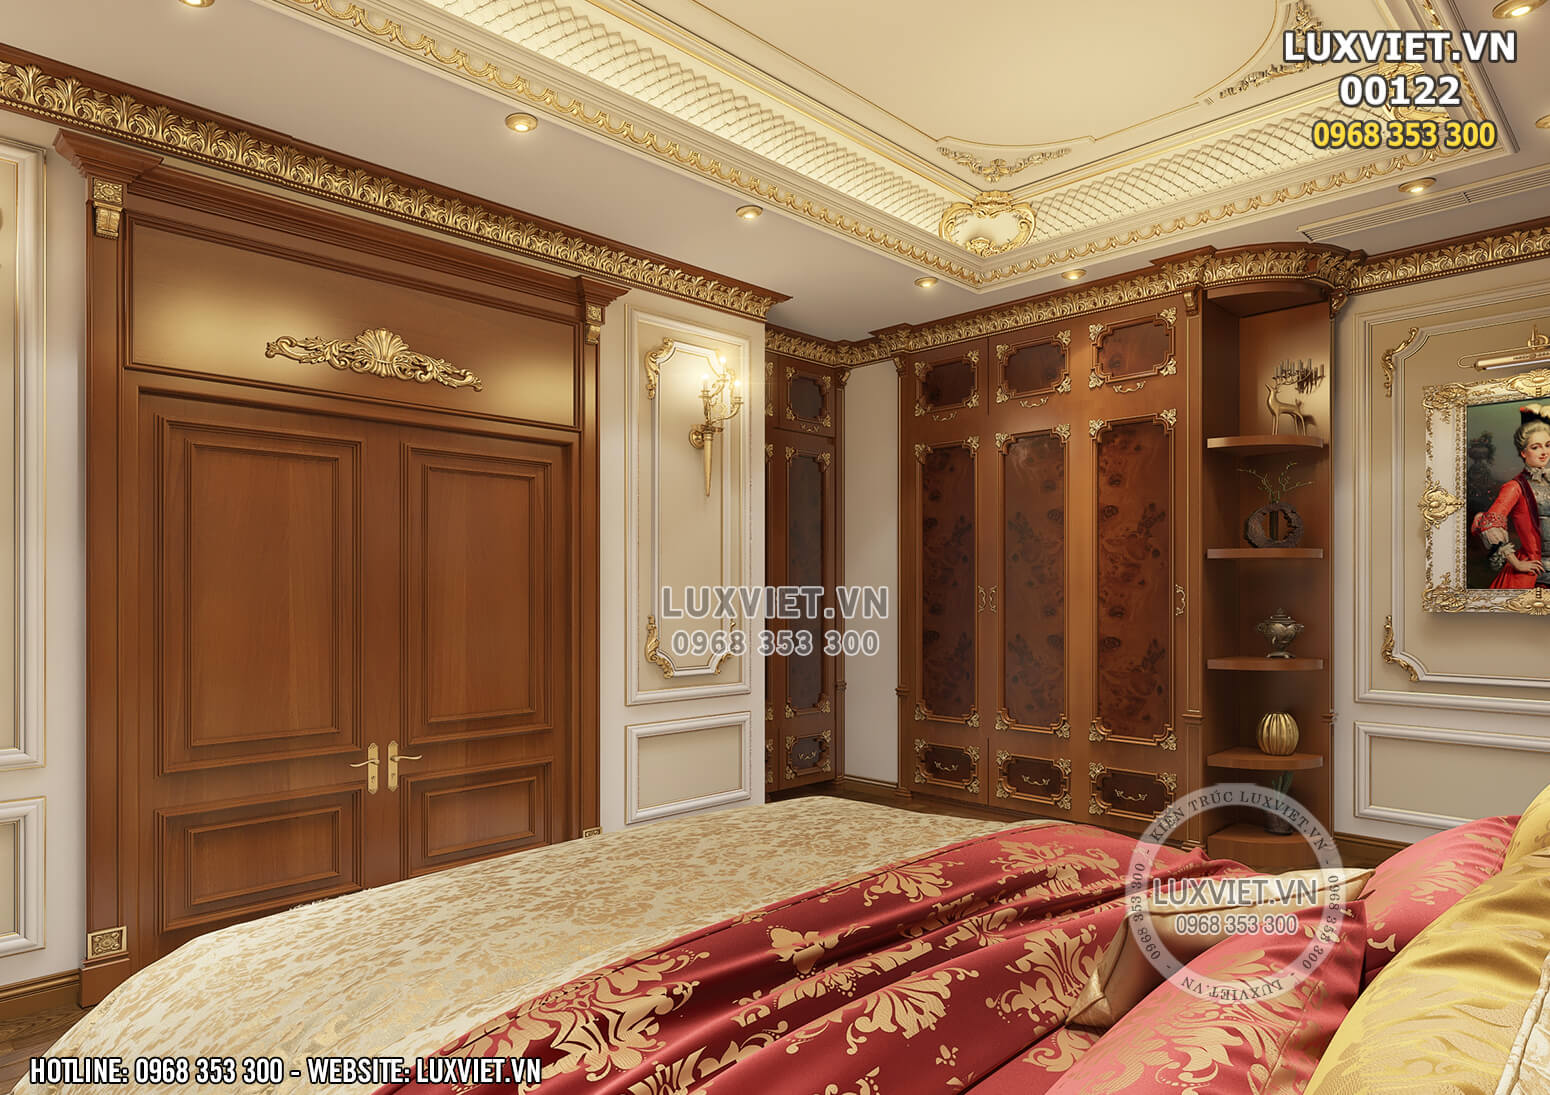 Hình ảnh: Nội thất bằng gỗ cao cấp trong phòng ngủ tân cổ điển - LV 00122